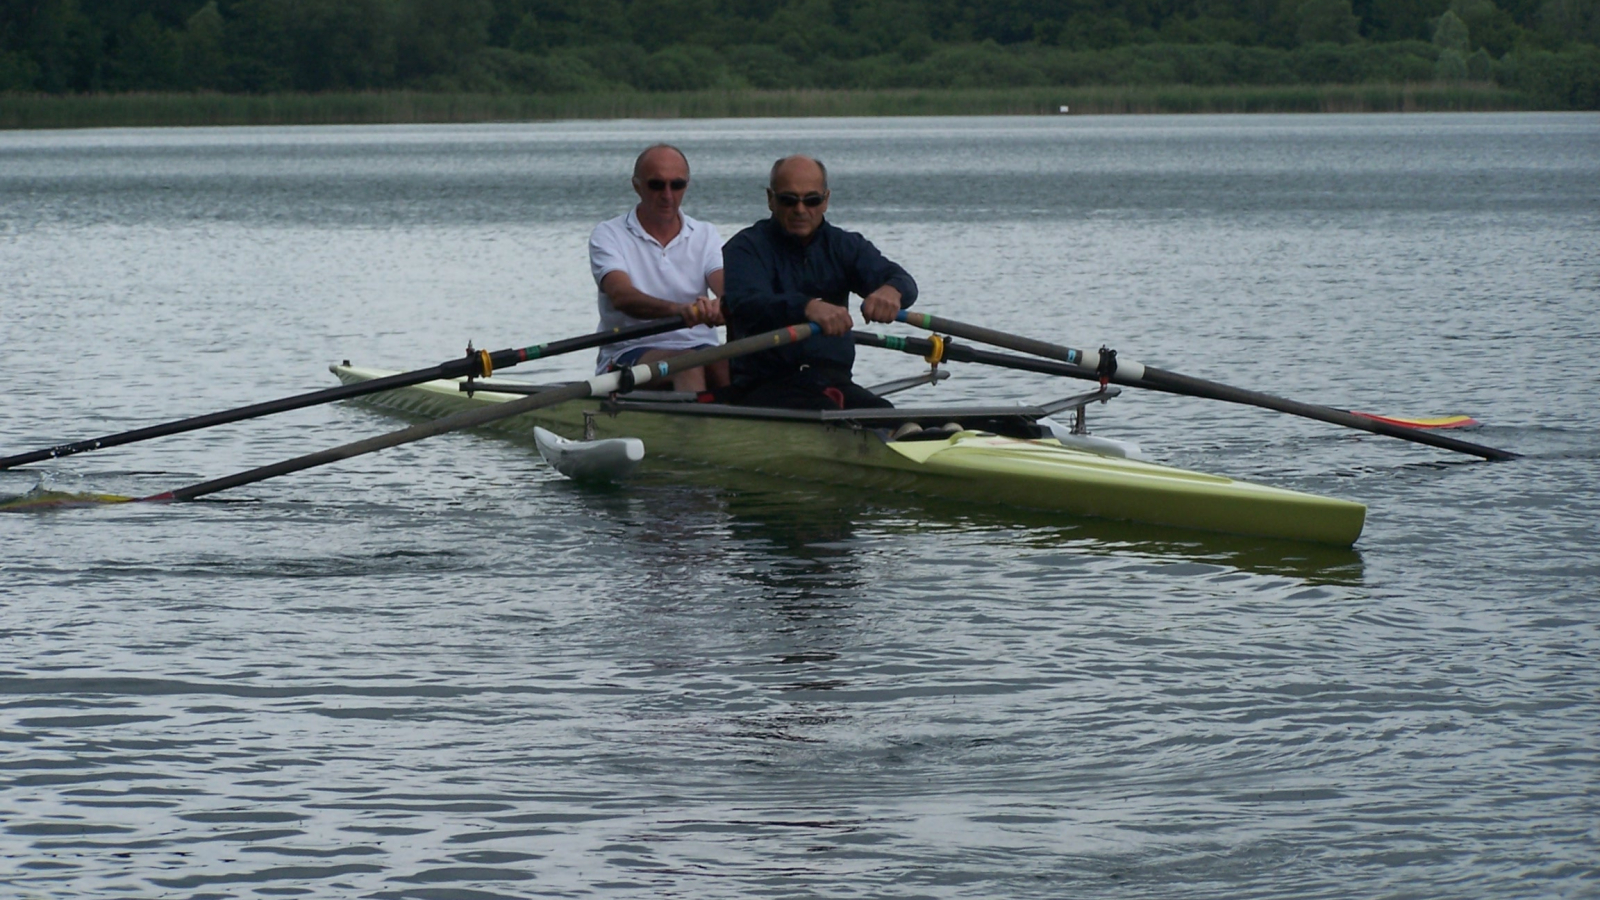 À bord d'un aviron stabilisé sur l'eau, deux personnes rament sur le lac. L'aviron est adapté à l'accueil de deux personnes en situation de handicap.